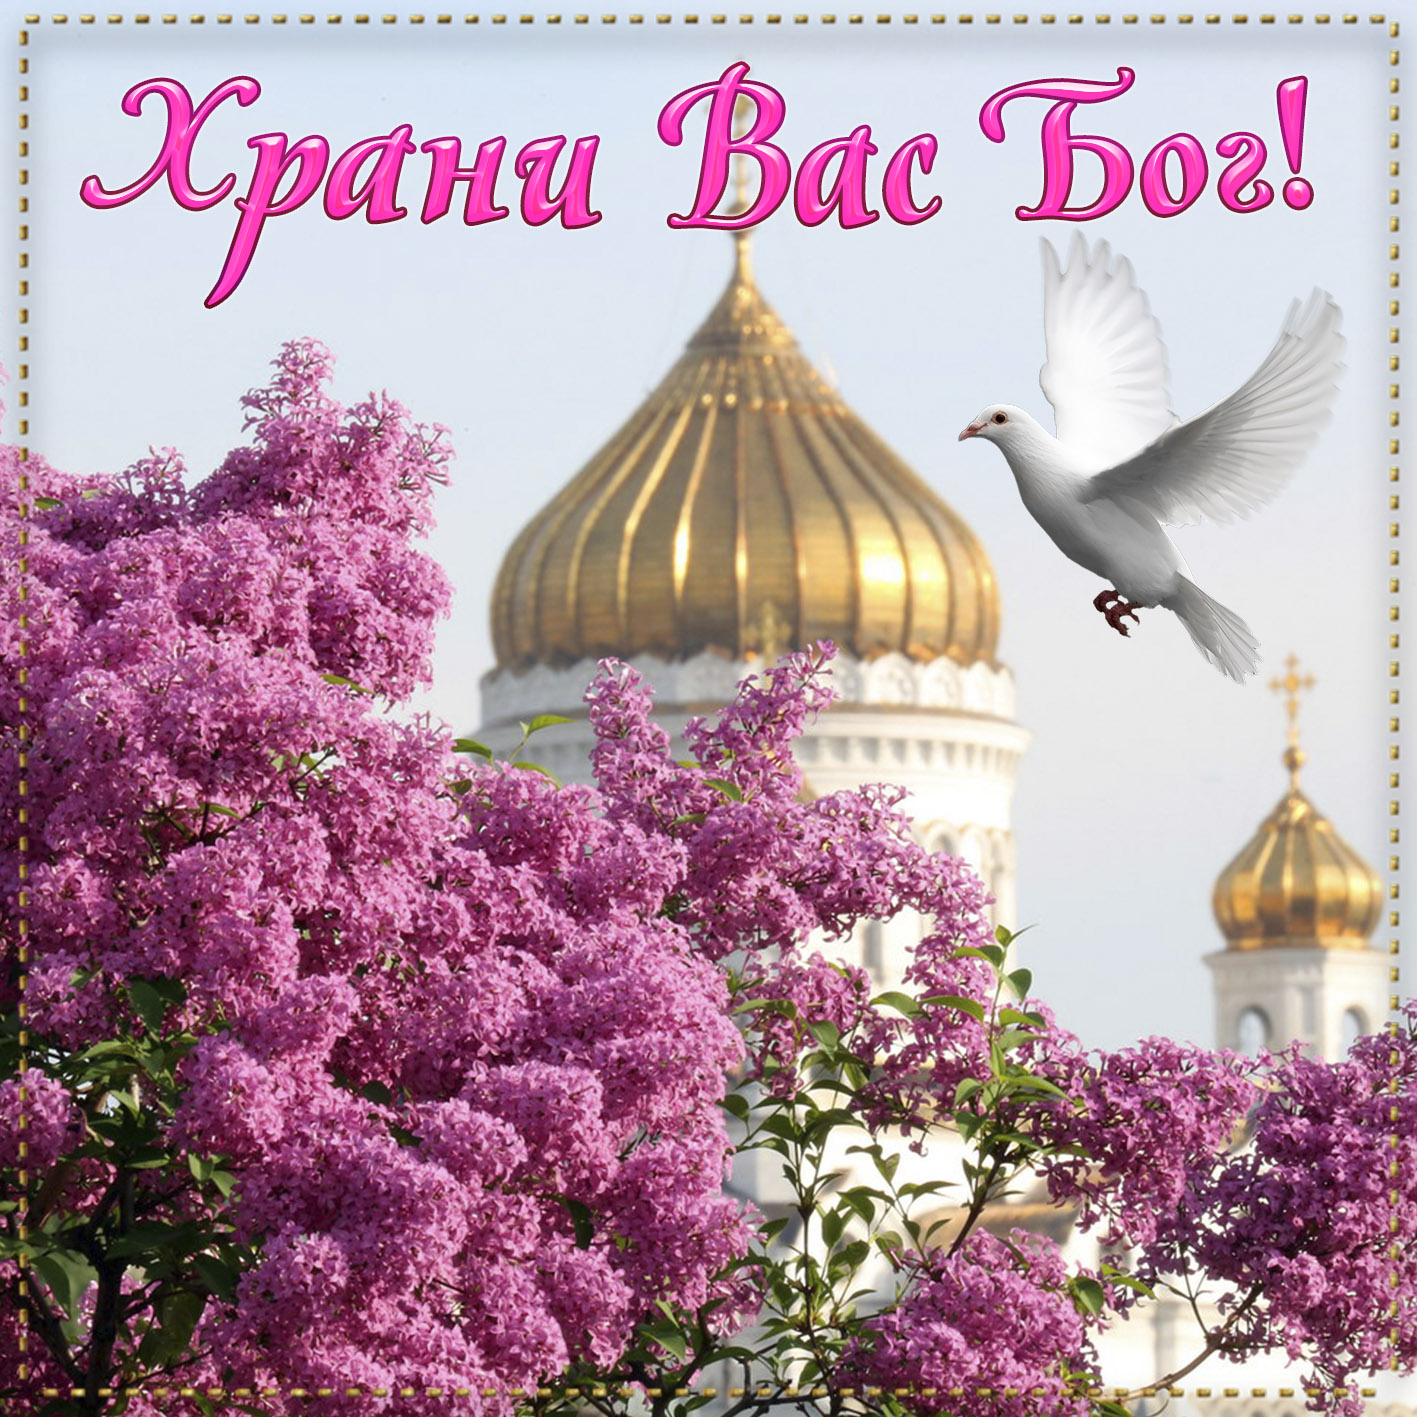 Православная открытка храни вас бог